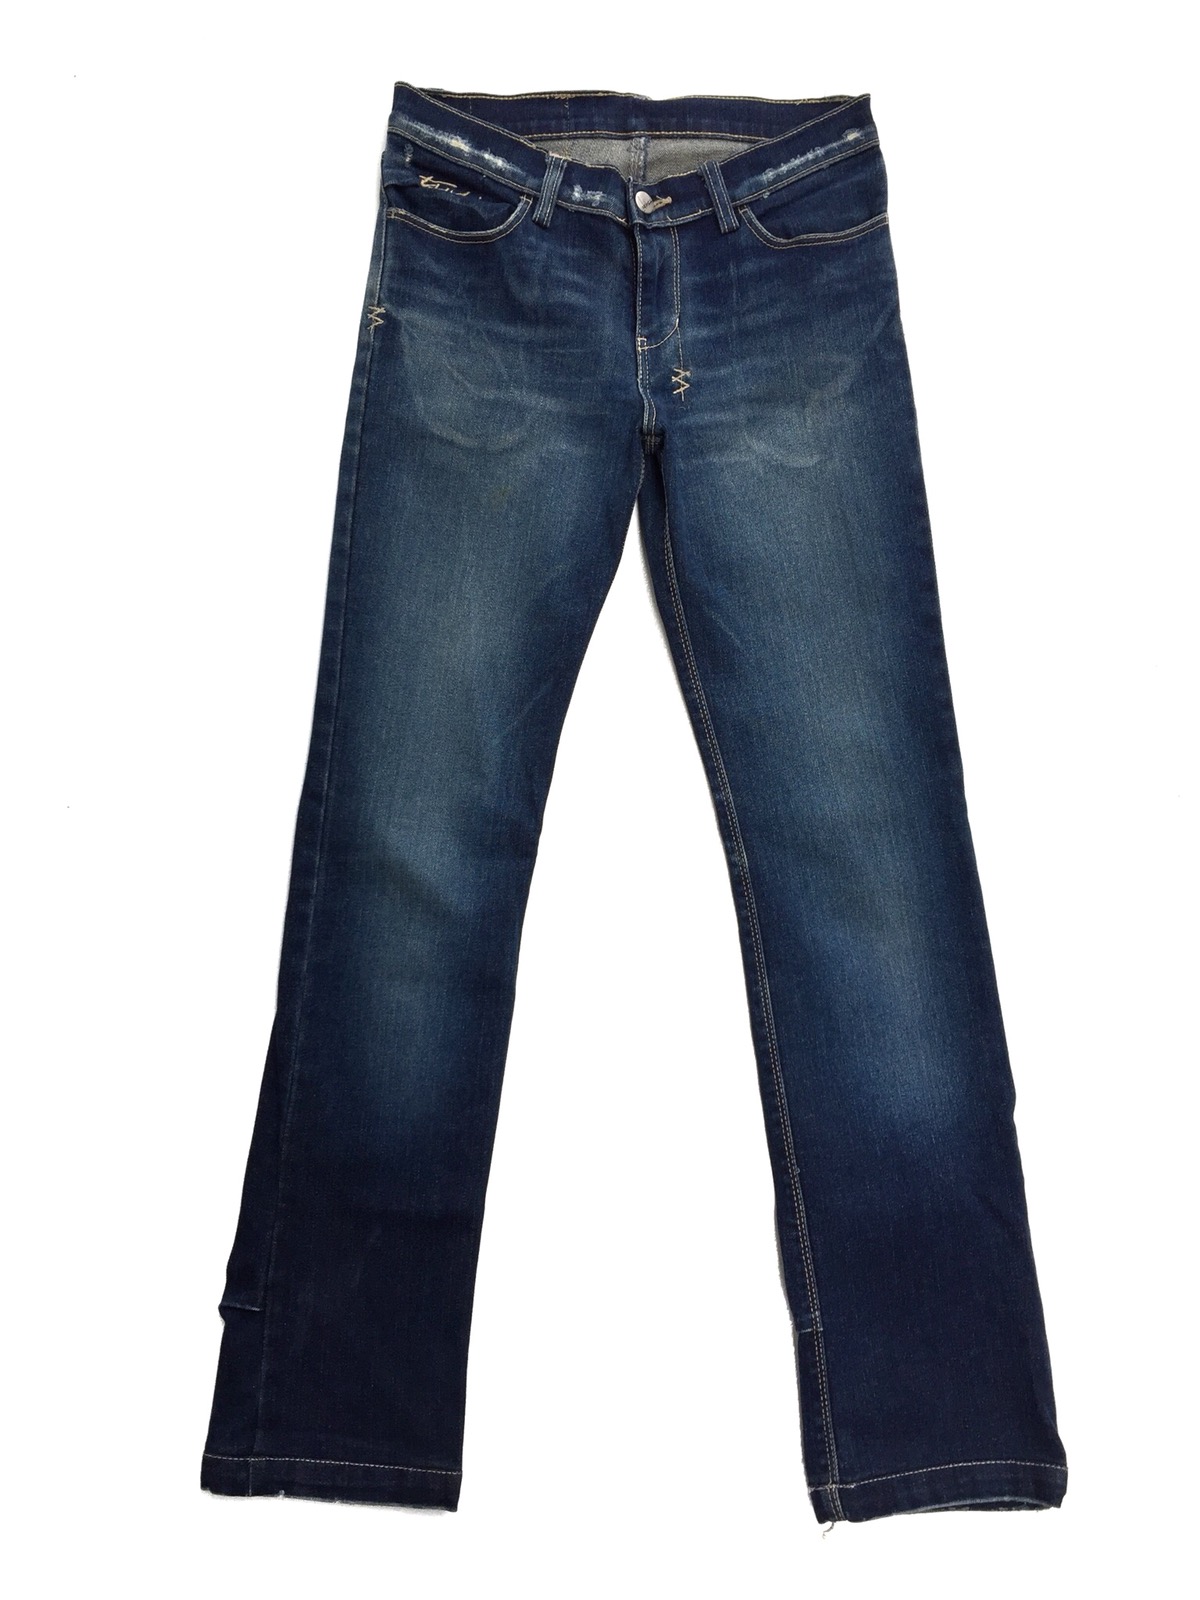 KSUBI Distressed Rip Van Winkle Jeans - 3